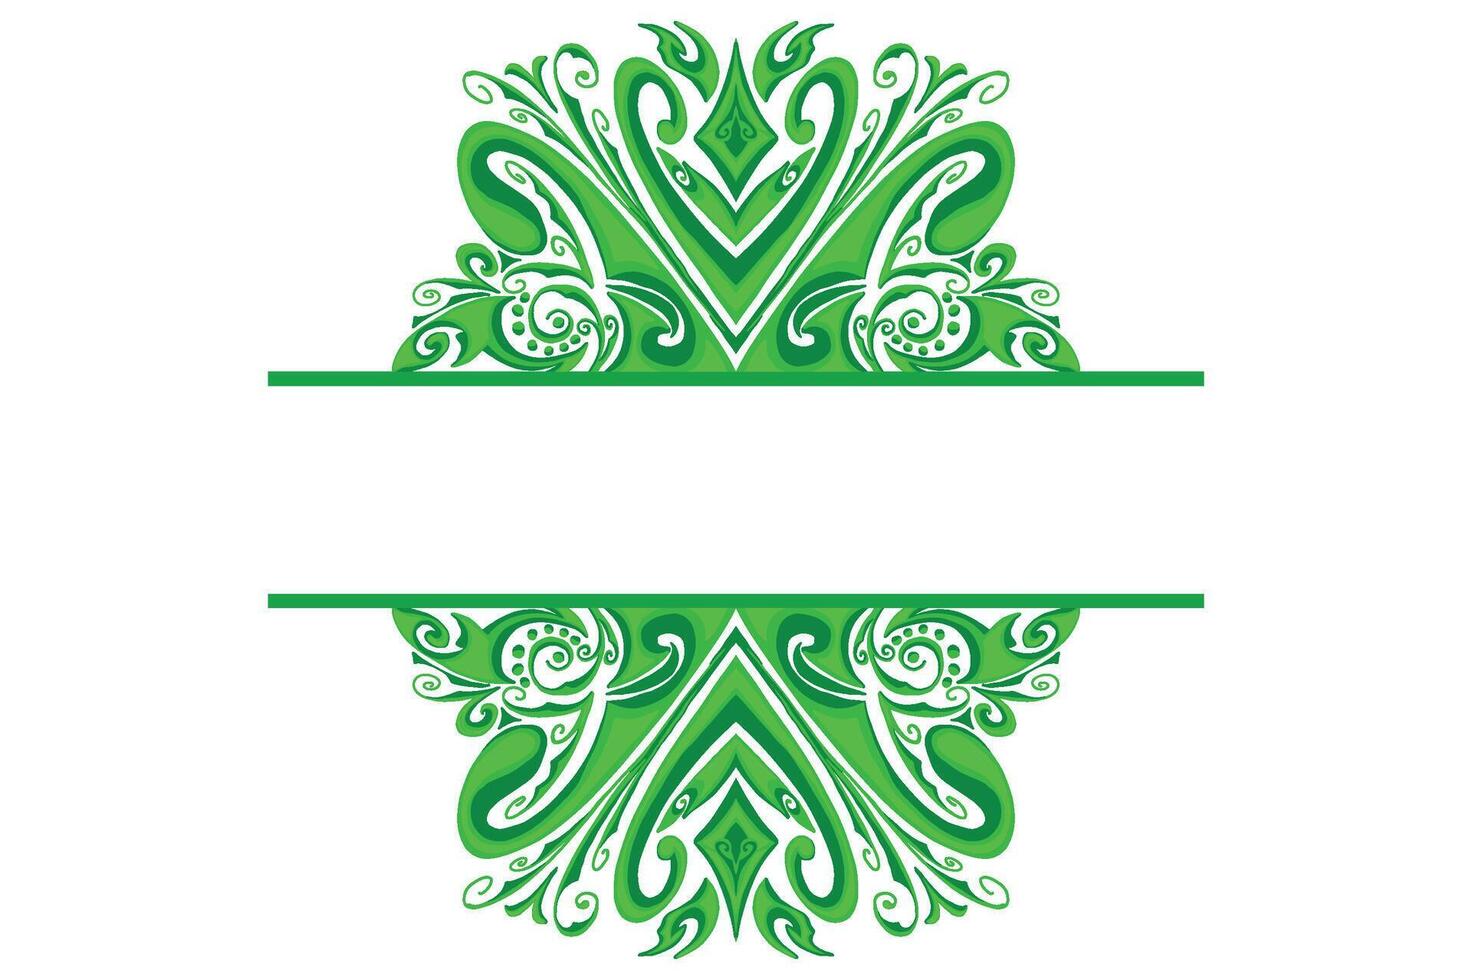 grön prydnad ram gräns vektor design för dekoration